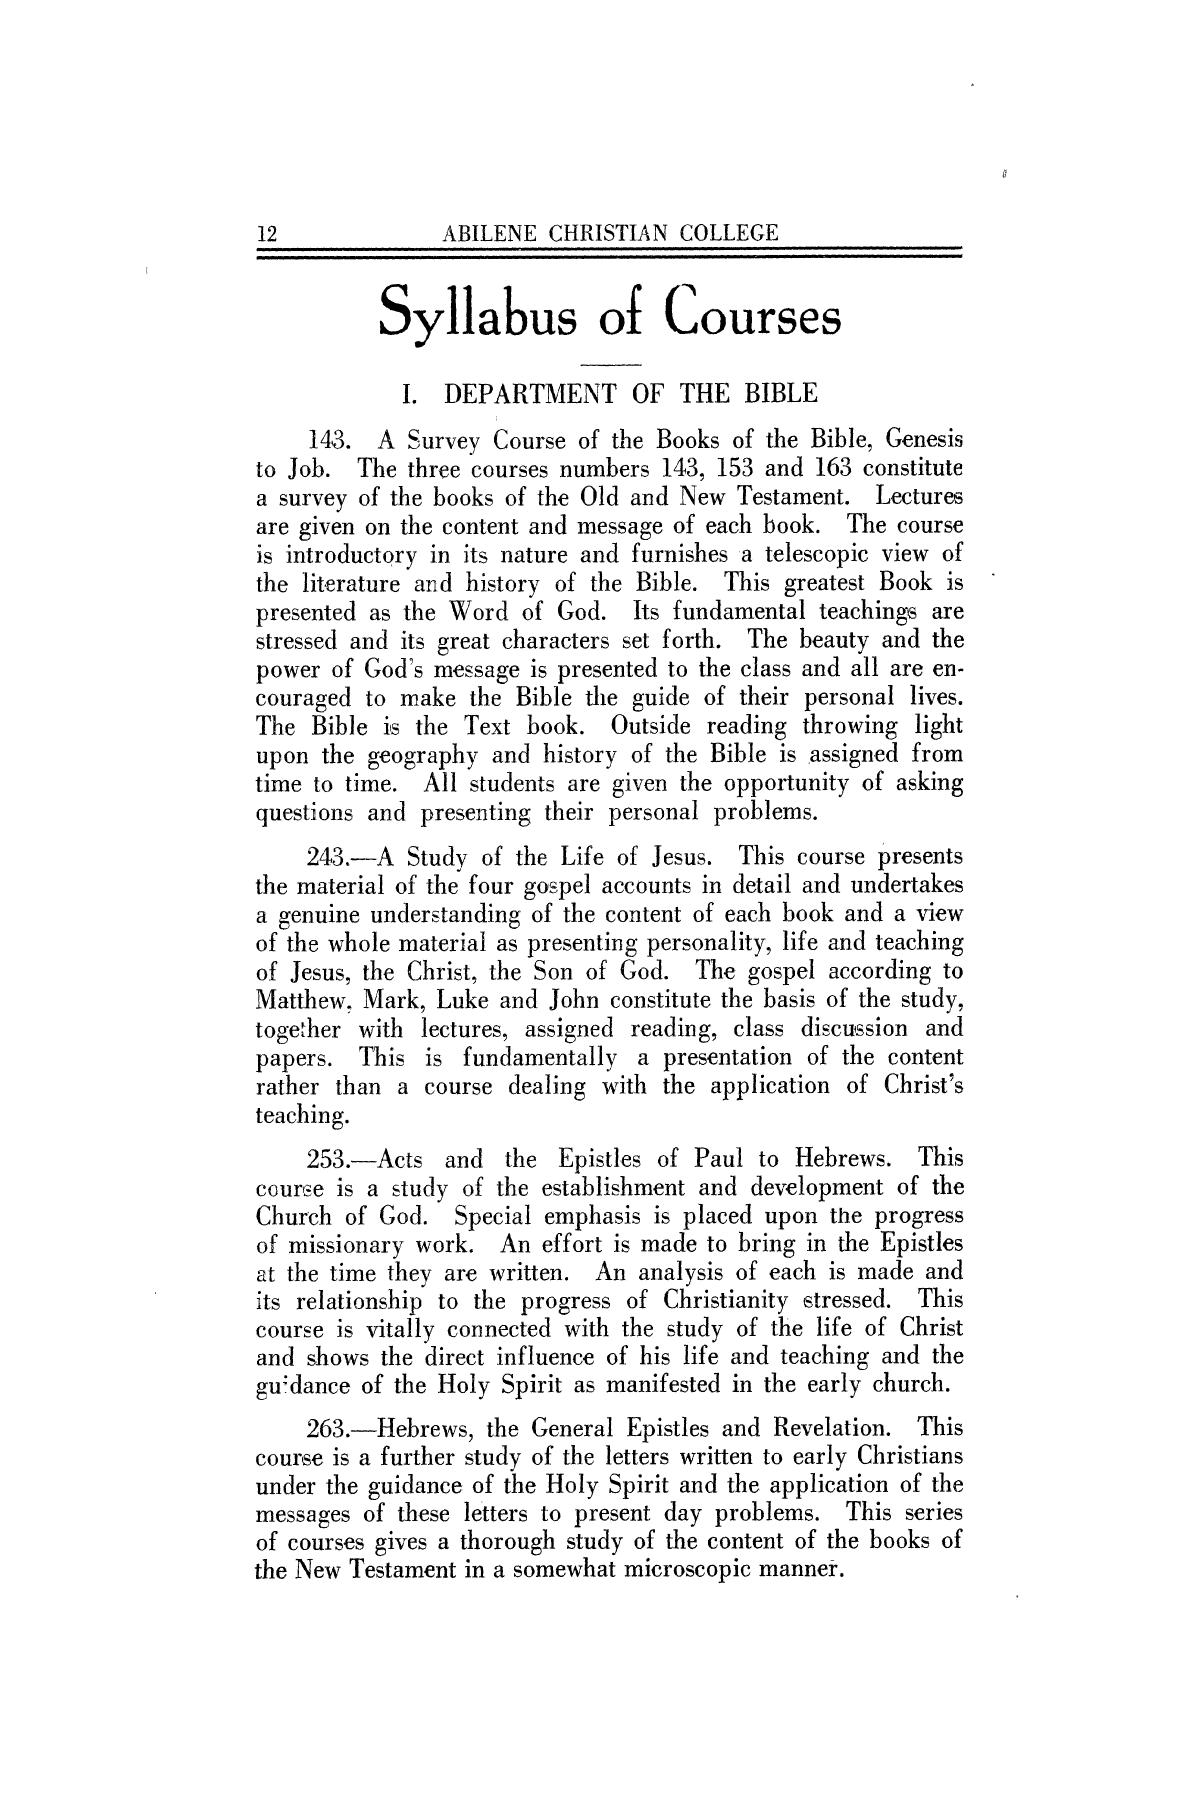 Catalog of Abilene Christian College, 1926
                                                
                                                    12
                                                